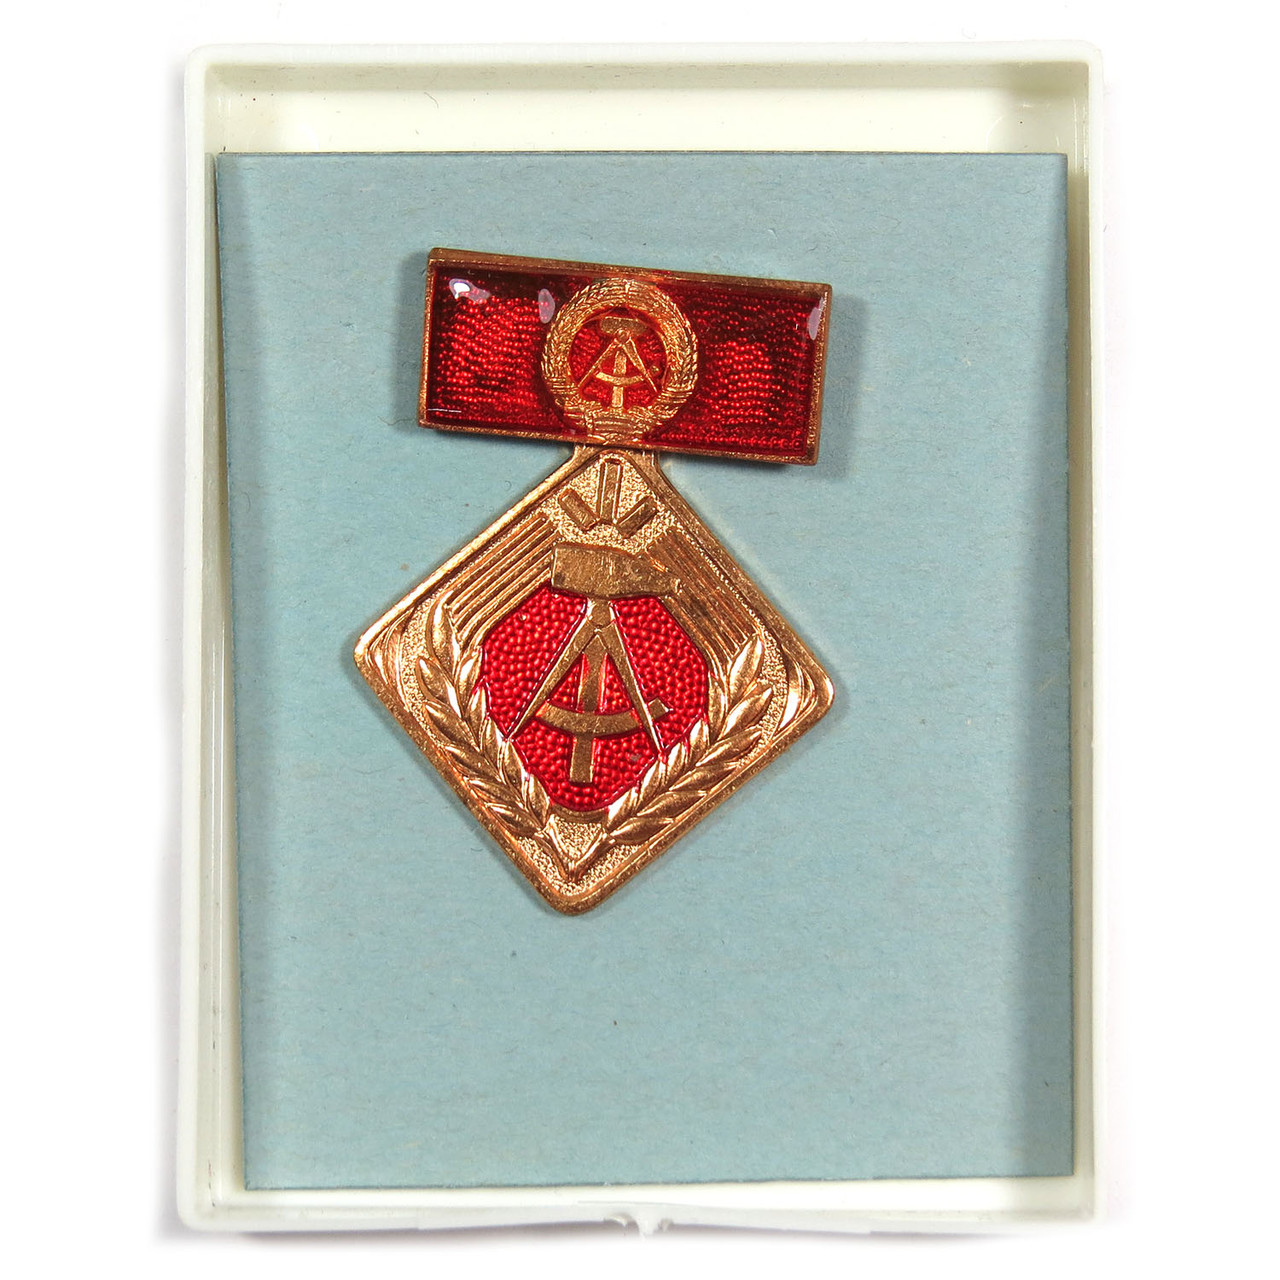 Socialist Labor Activist Medal